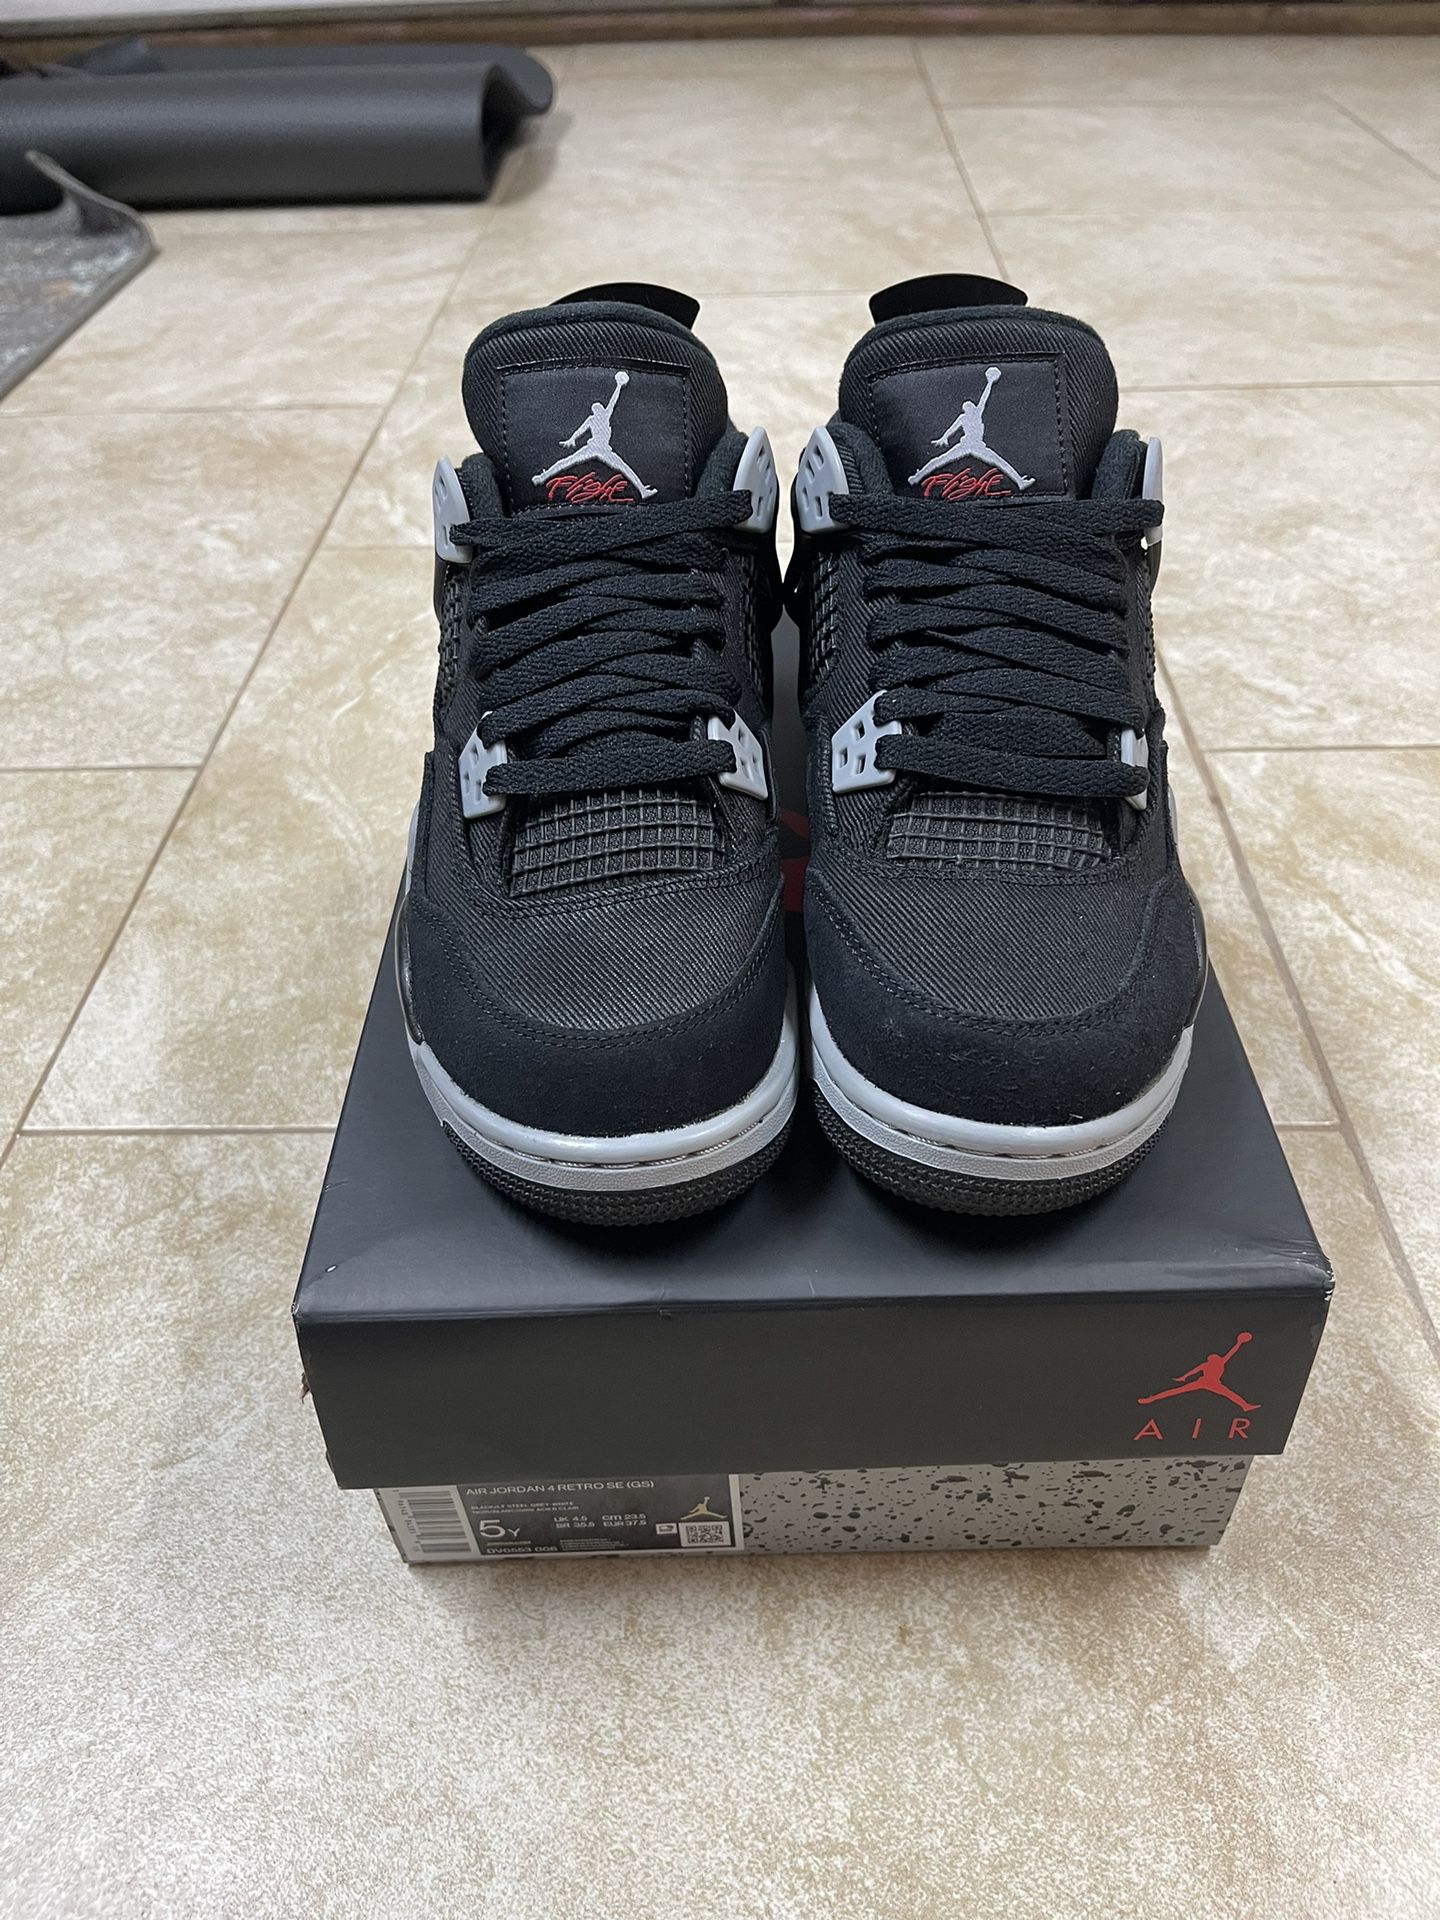 Air Jordan 4 Retro “Black Canvas” Size 5Y